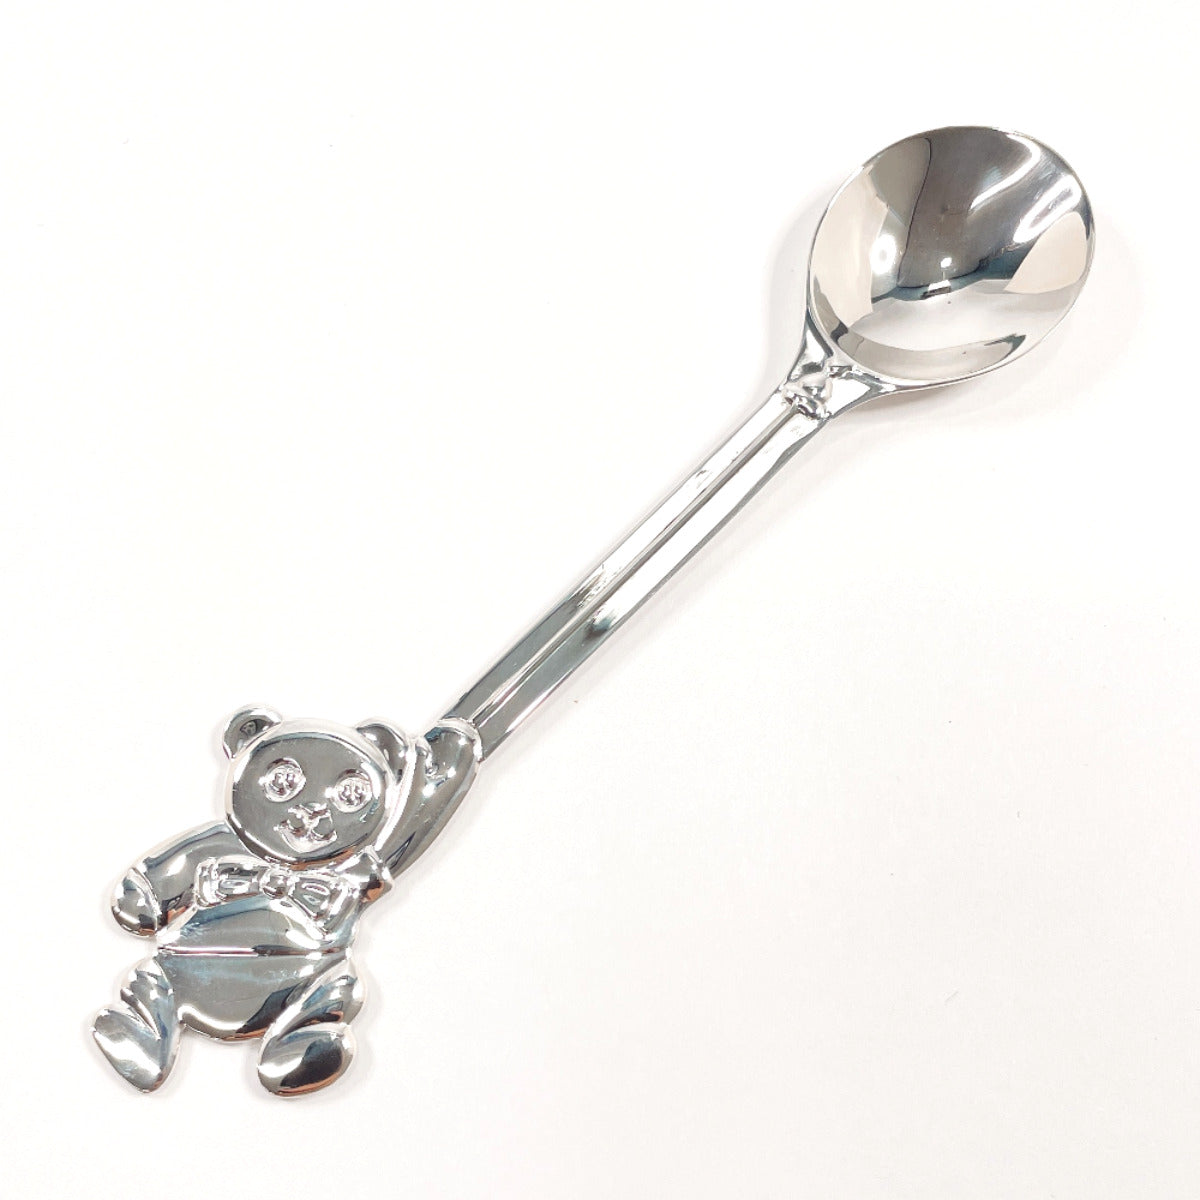 Teddy Sterling Silver Baby Feeding Spoon